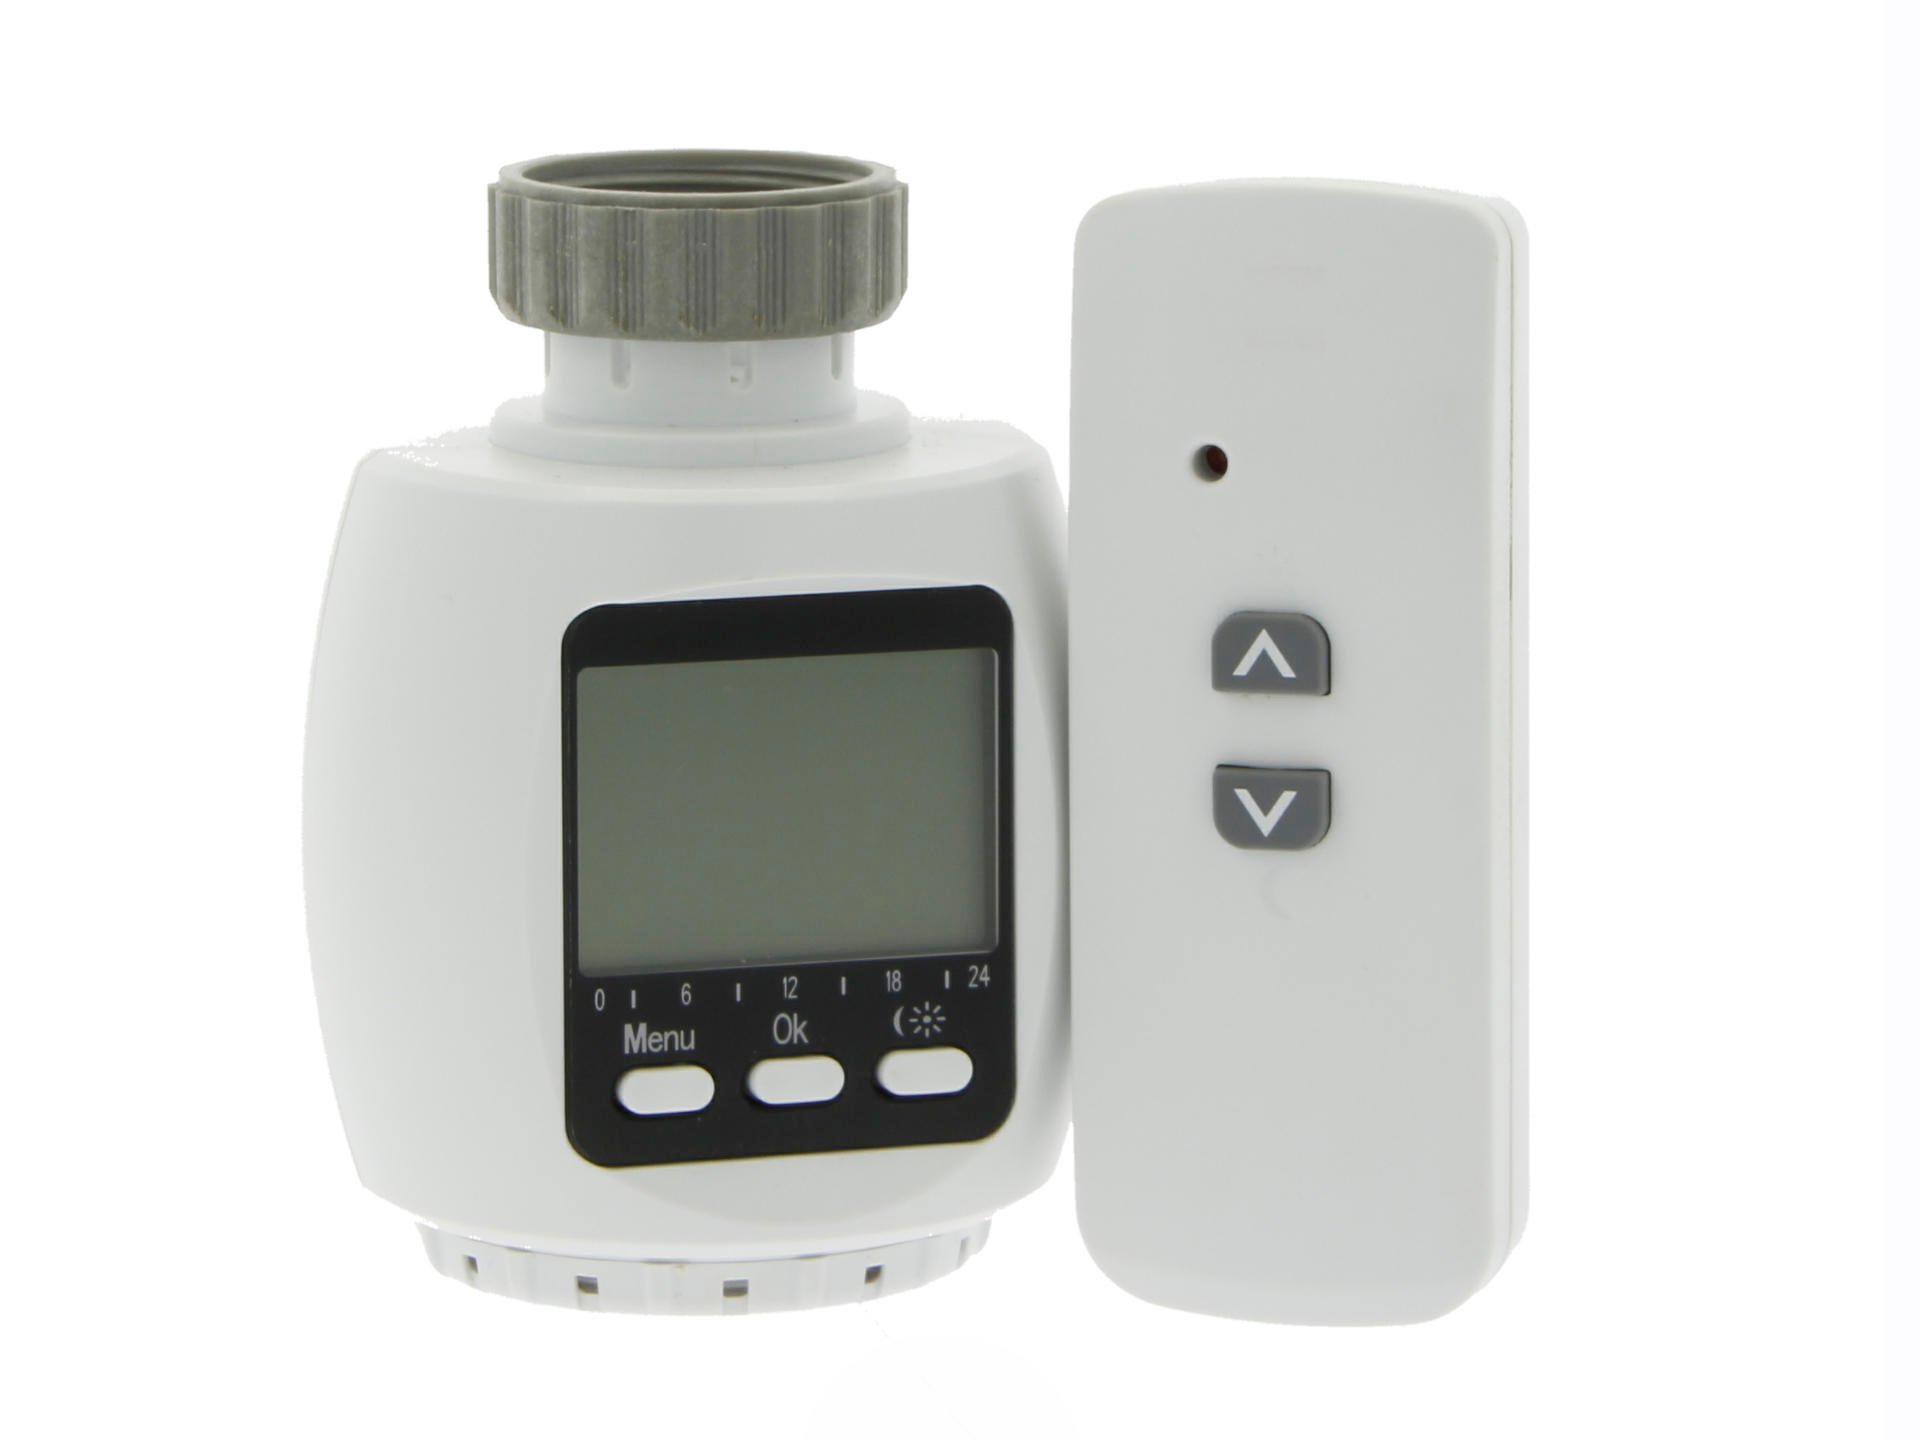 Profile Vanne thermostatique digitale Qnect RF avec télécommande